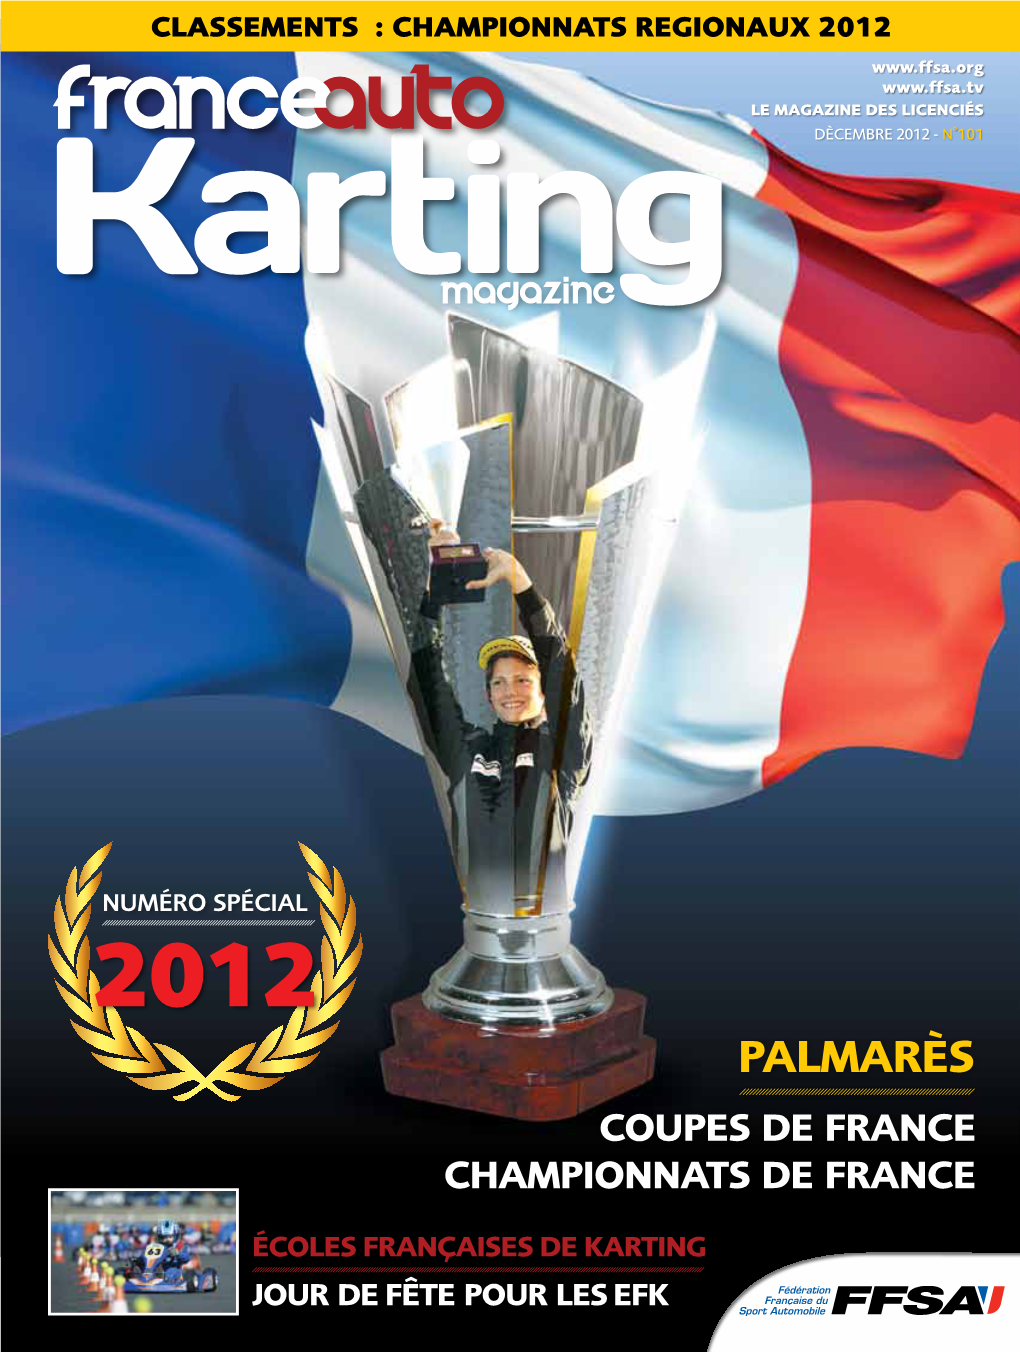 Palmarès Coupes De France Championnats De France